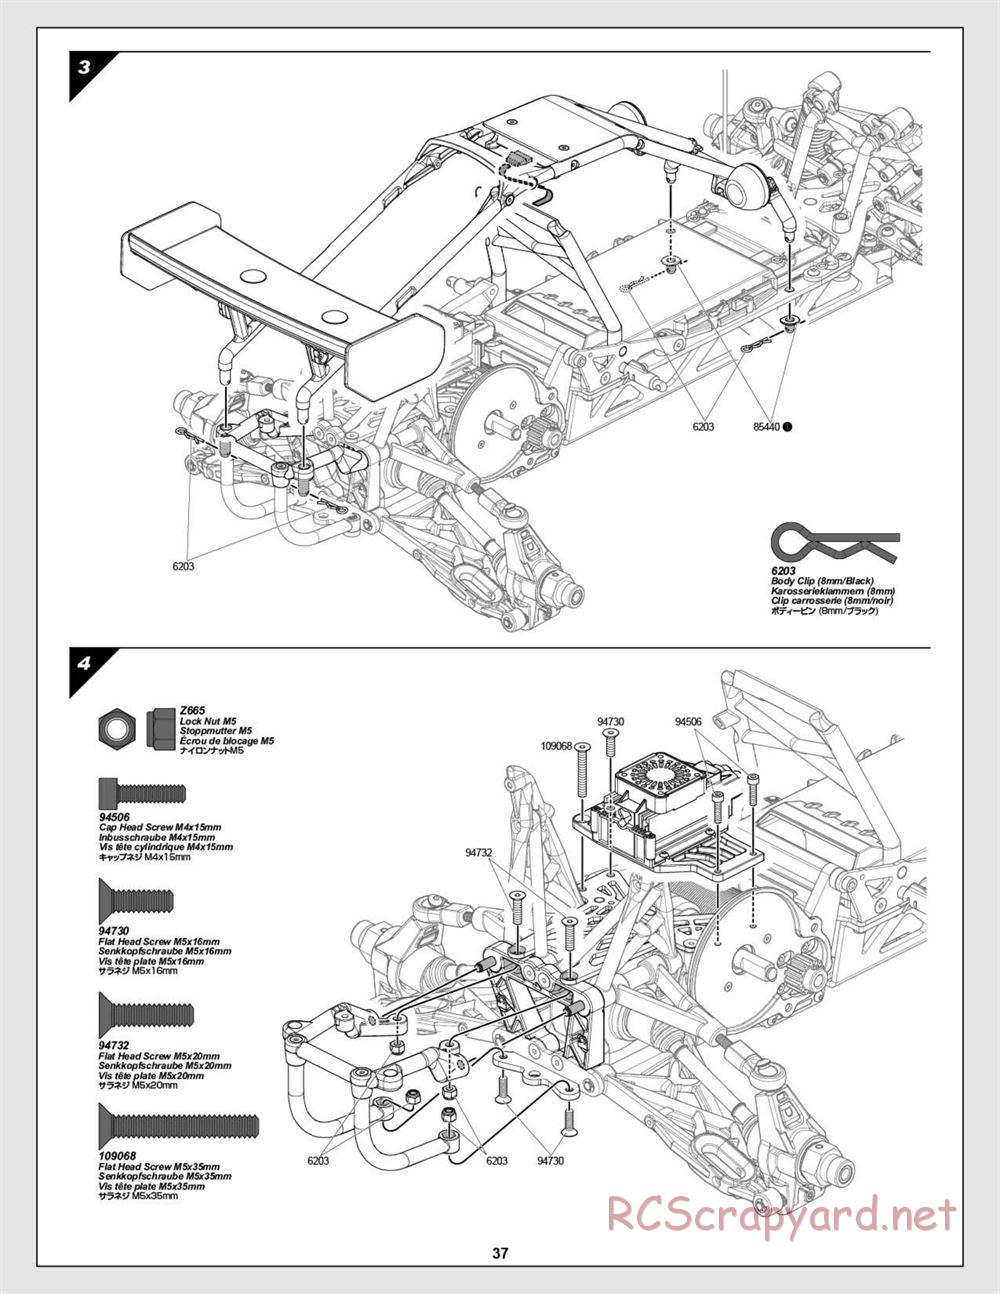 HPI - Baja 5B Flux Buggy - Manual - Page 37